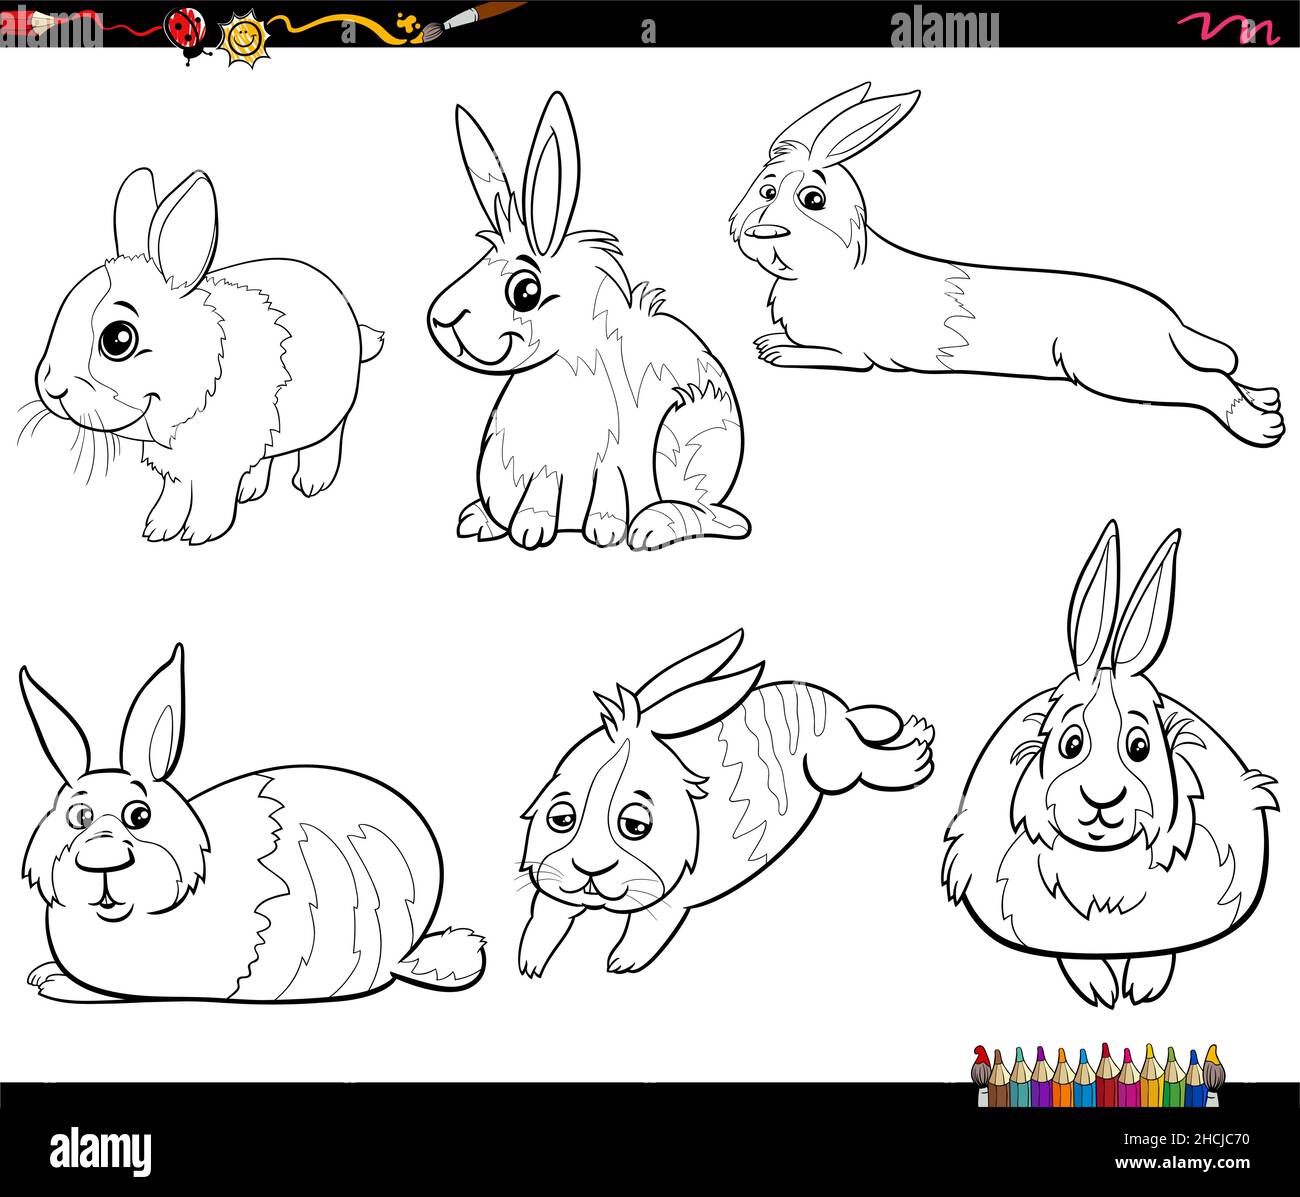 Schwarz-Weiß-Cartoon-Illustration von Miniatur-Kaninchen Tierfiguren setzen Malbuch Seite Stock Vektor